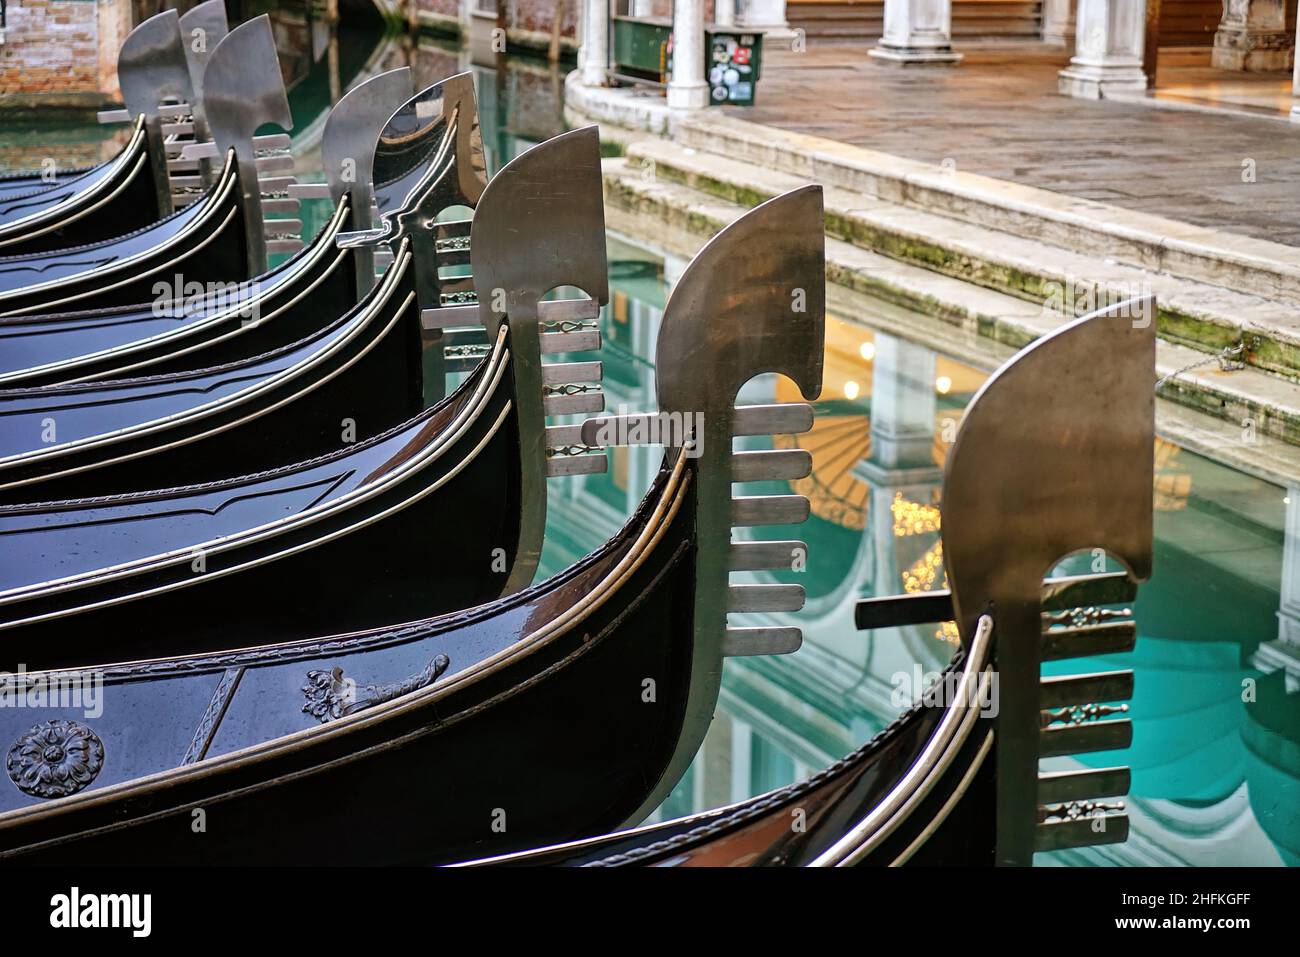 Detalle en el arco de acero de góndolas venecianas amarradas en Venecia, Italia. Foto de stock